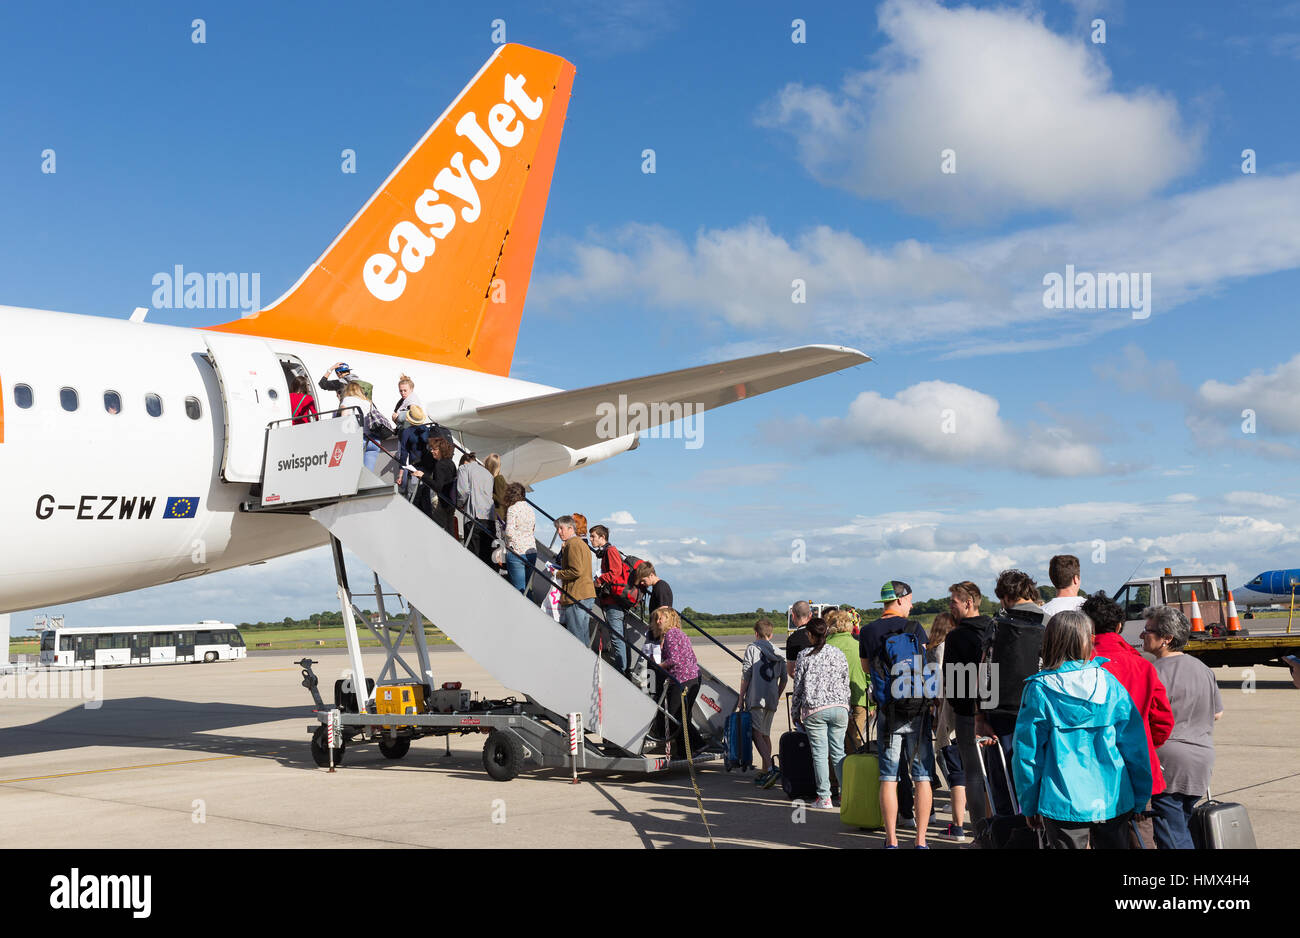 BRISTOL, UK - 11. Juli 2016: Eine Warteschlange von Fluggästen das Endstückende des Flugzeuges Easyjet am Flughafen Bristol an einem sonnigen Tag. Stockfoto